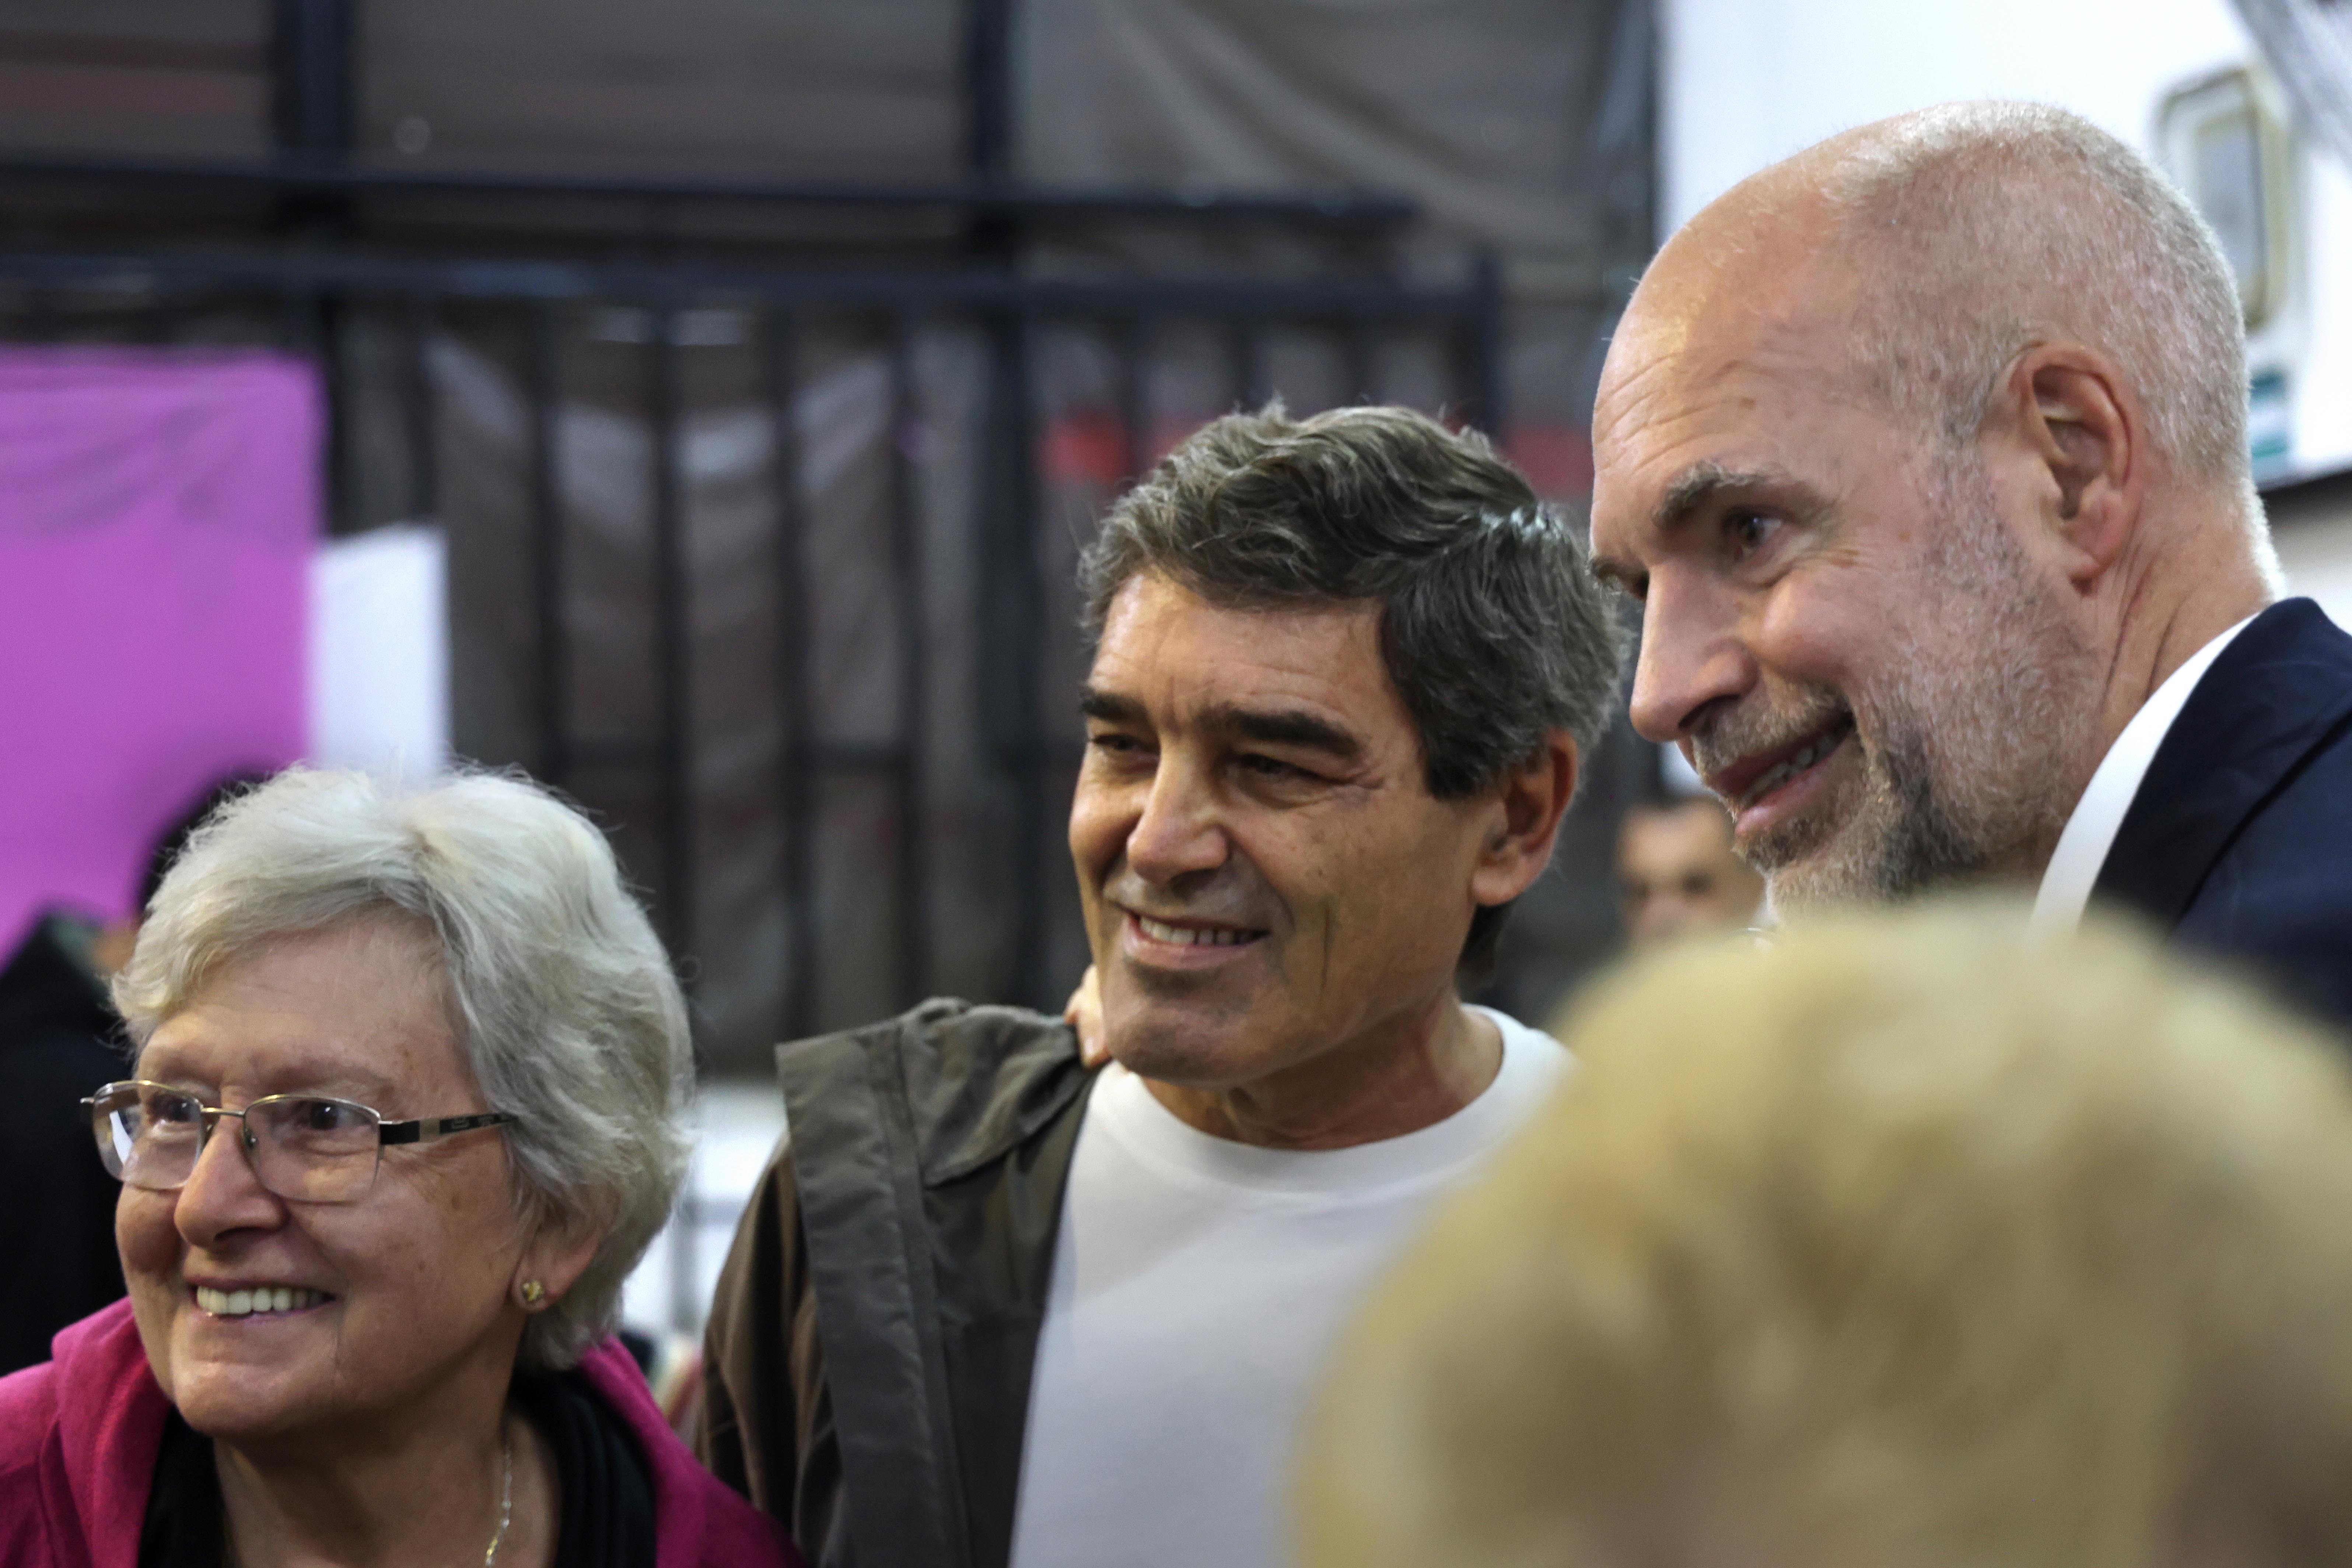 El Jefe de Gobierno visitó un centro de jubilados en Liniers y se reunió con vecinos de Mataderos